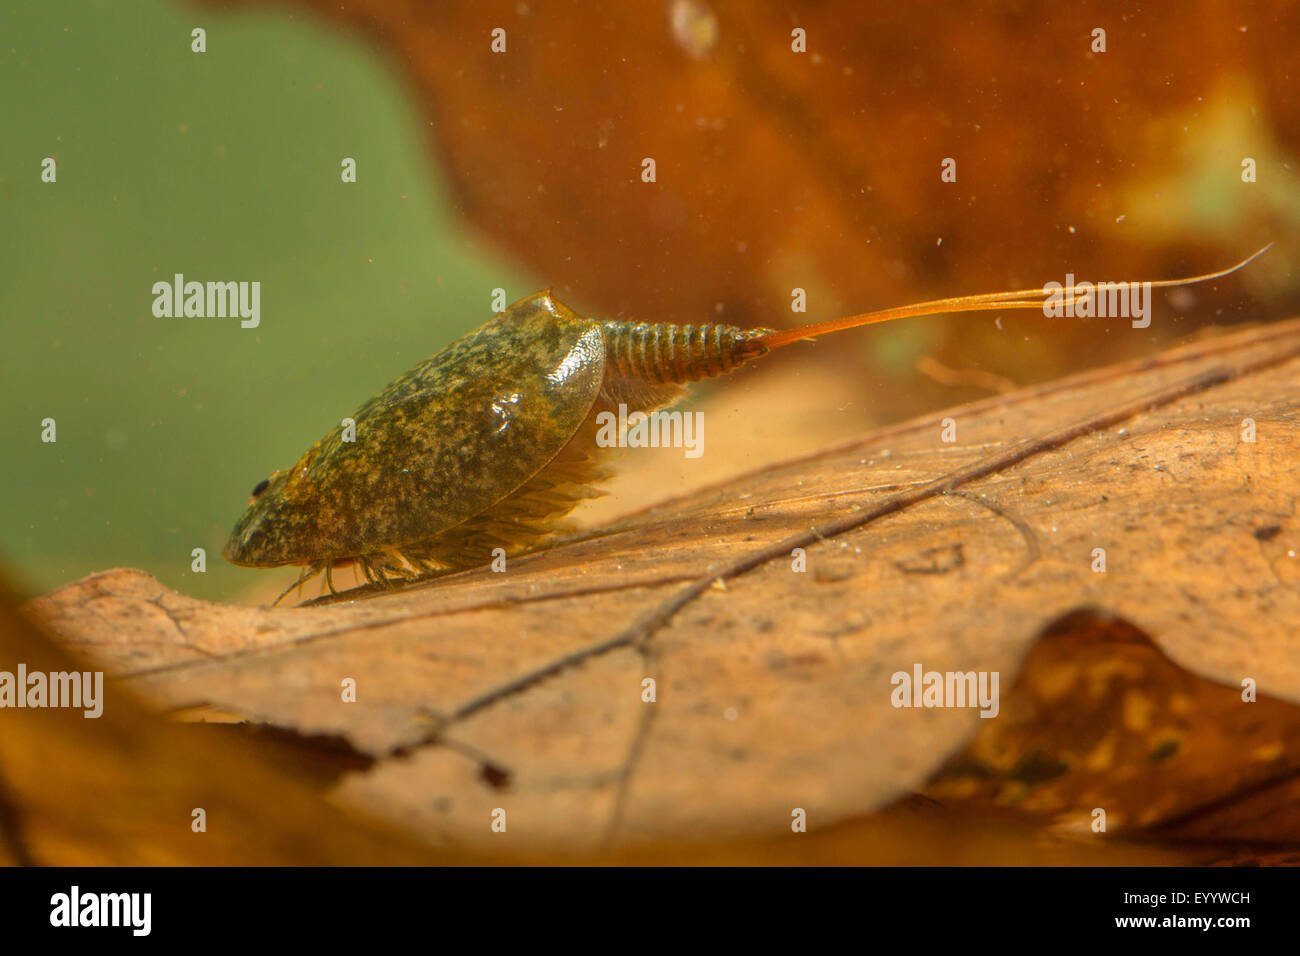 Tadpole Shrimp (Lepidurus lubbocki, Lepidurus apus, Lepidurus productus, Lepidurus apus lubbocki), on fallen leaves under water Stock Photo